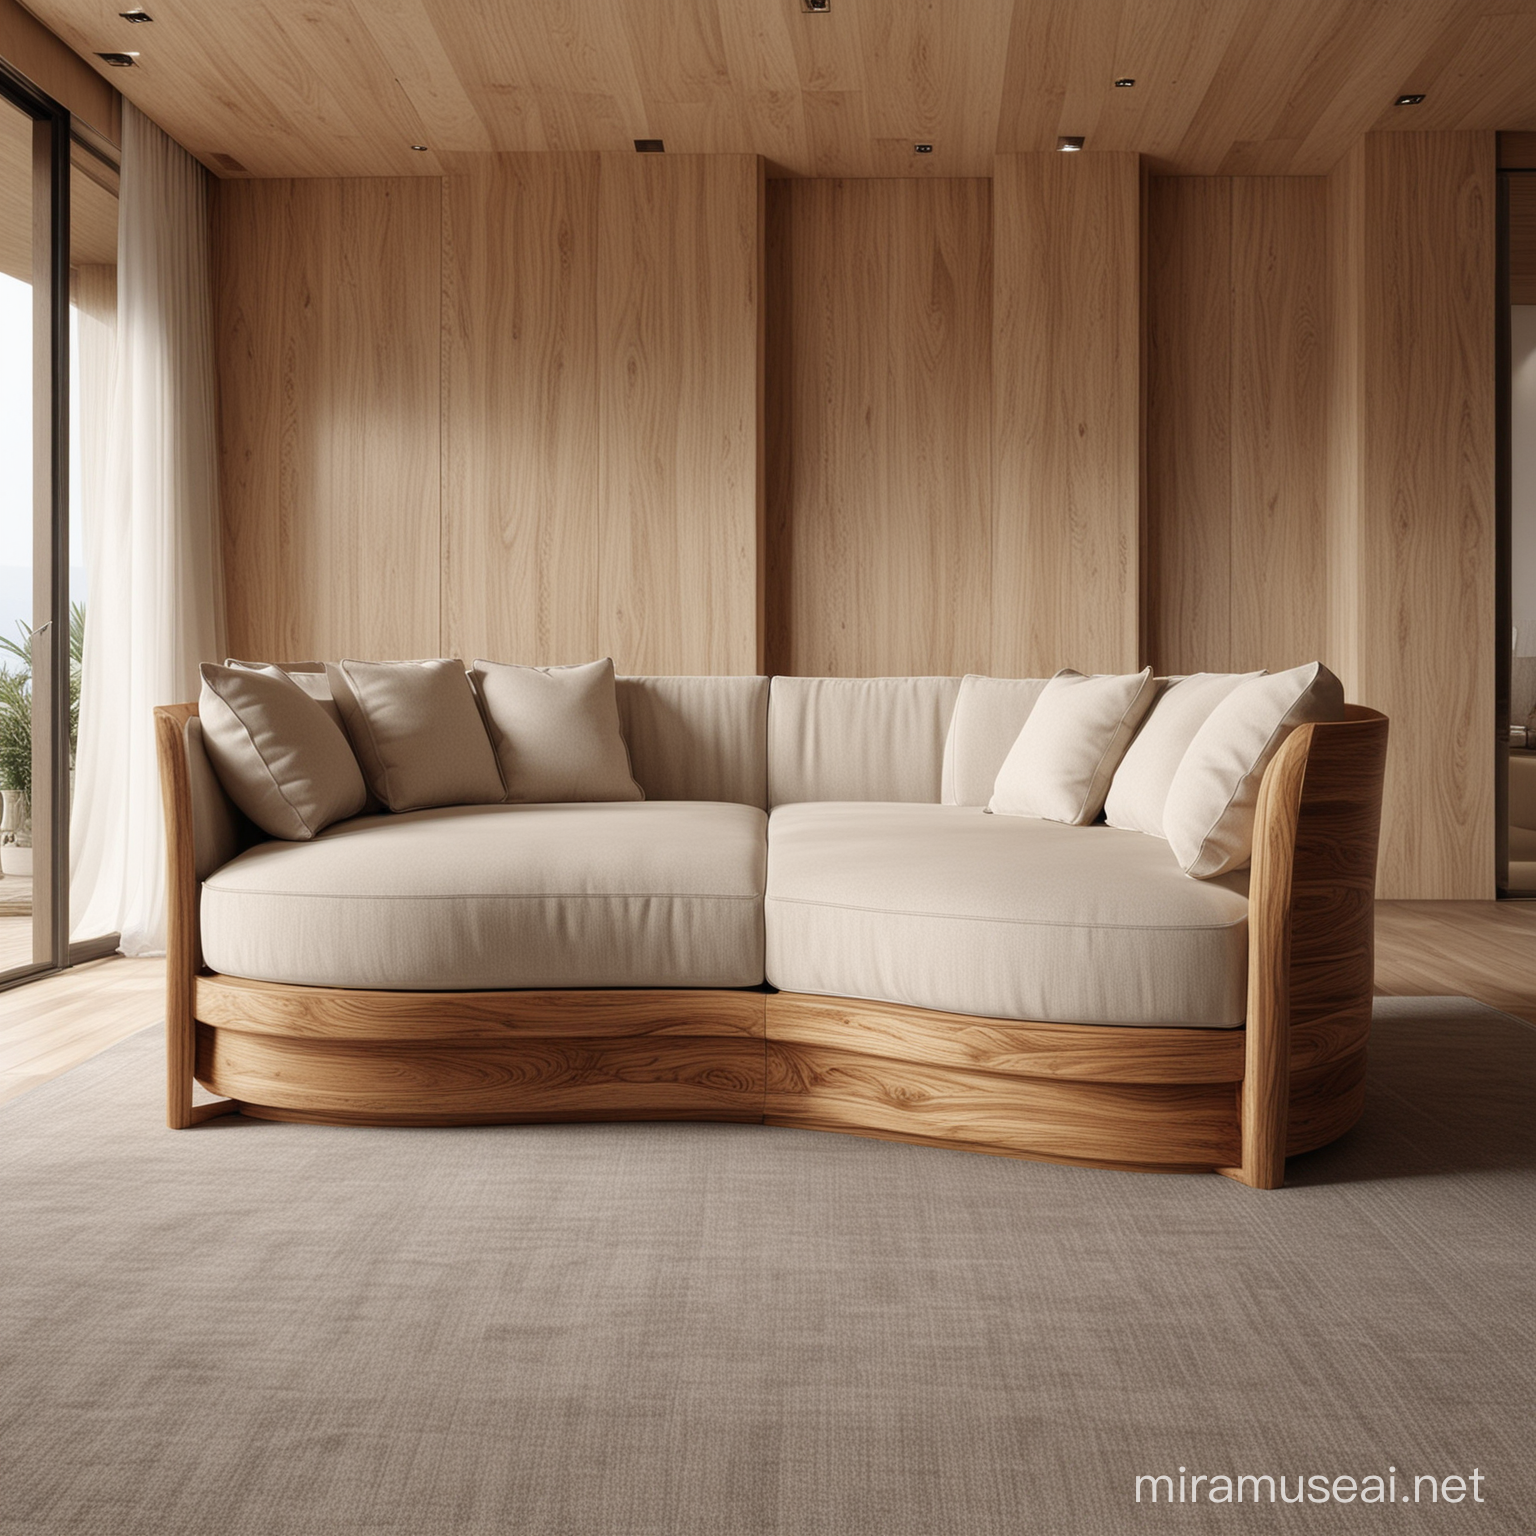 Elegantly Designed Wooden Sofa Set for Modern Living Rooms